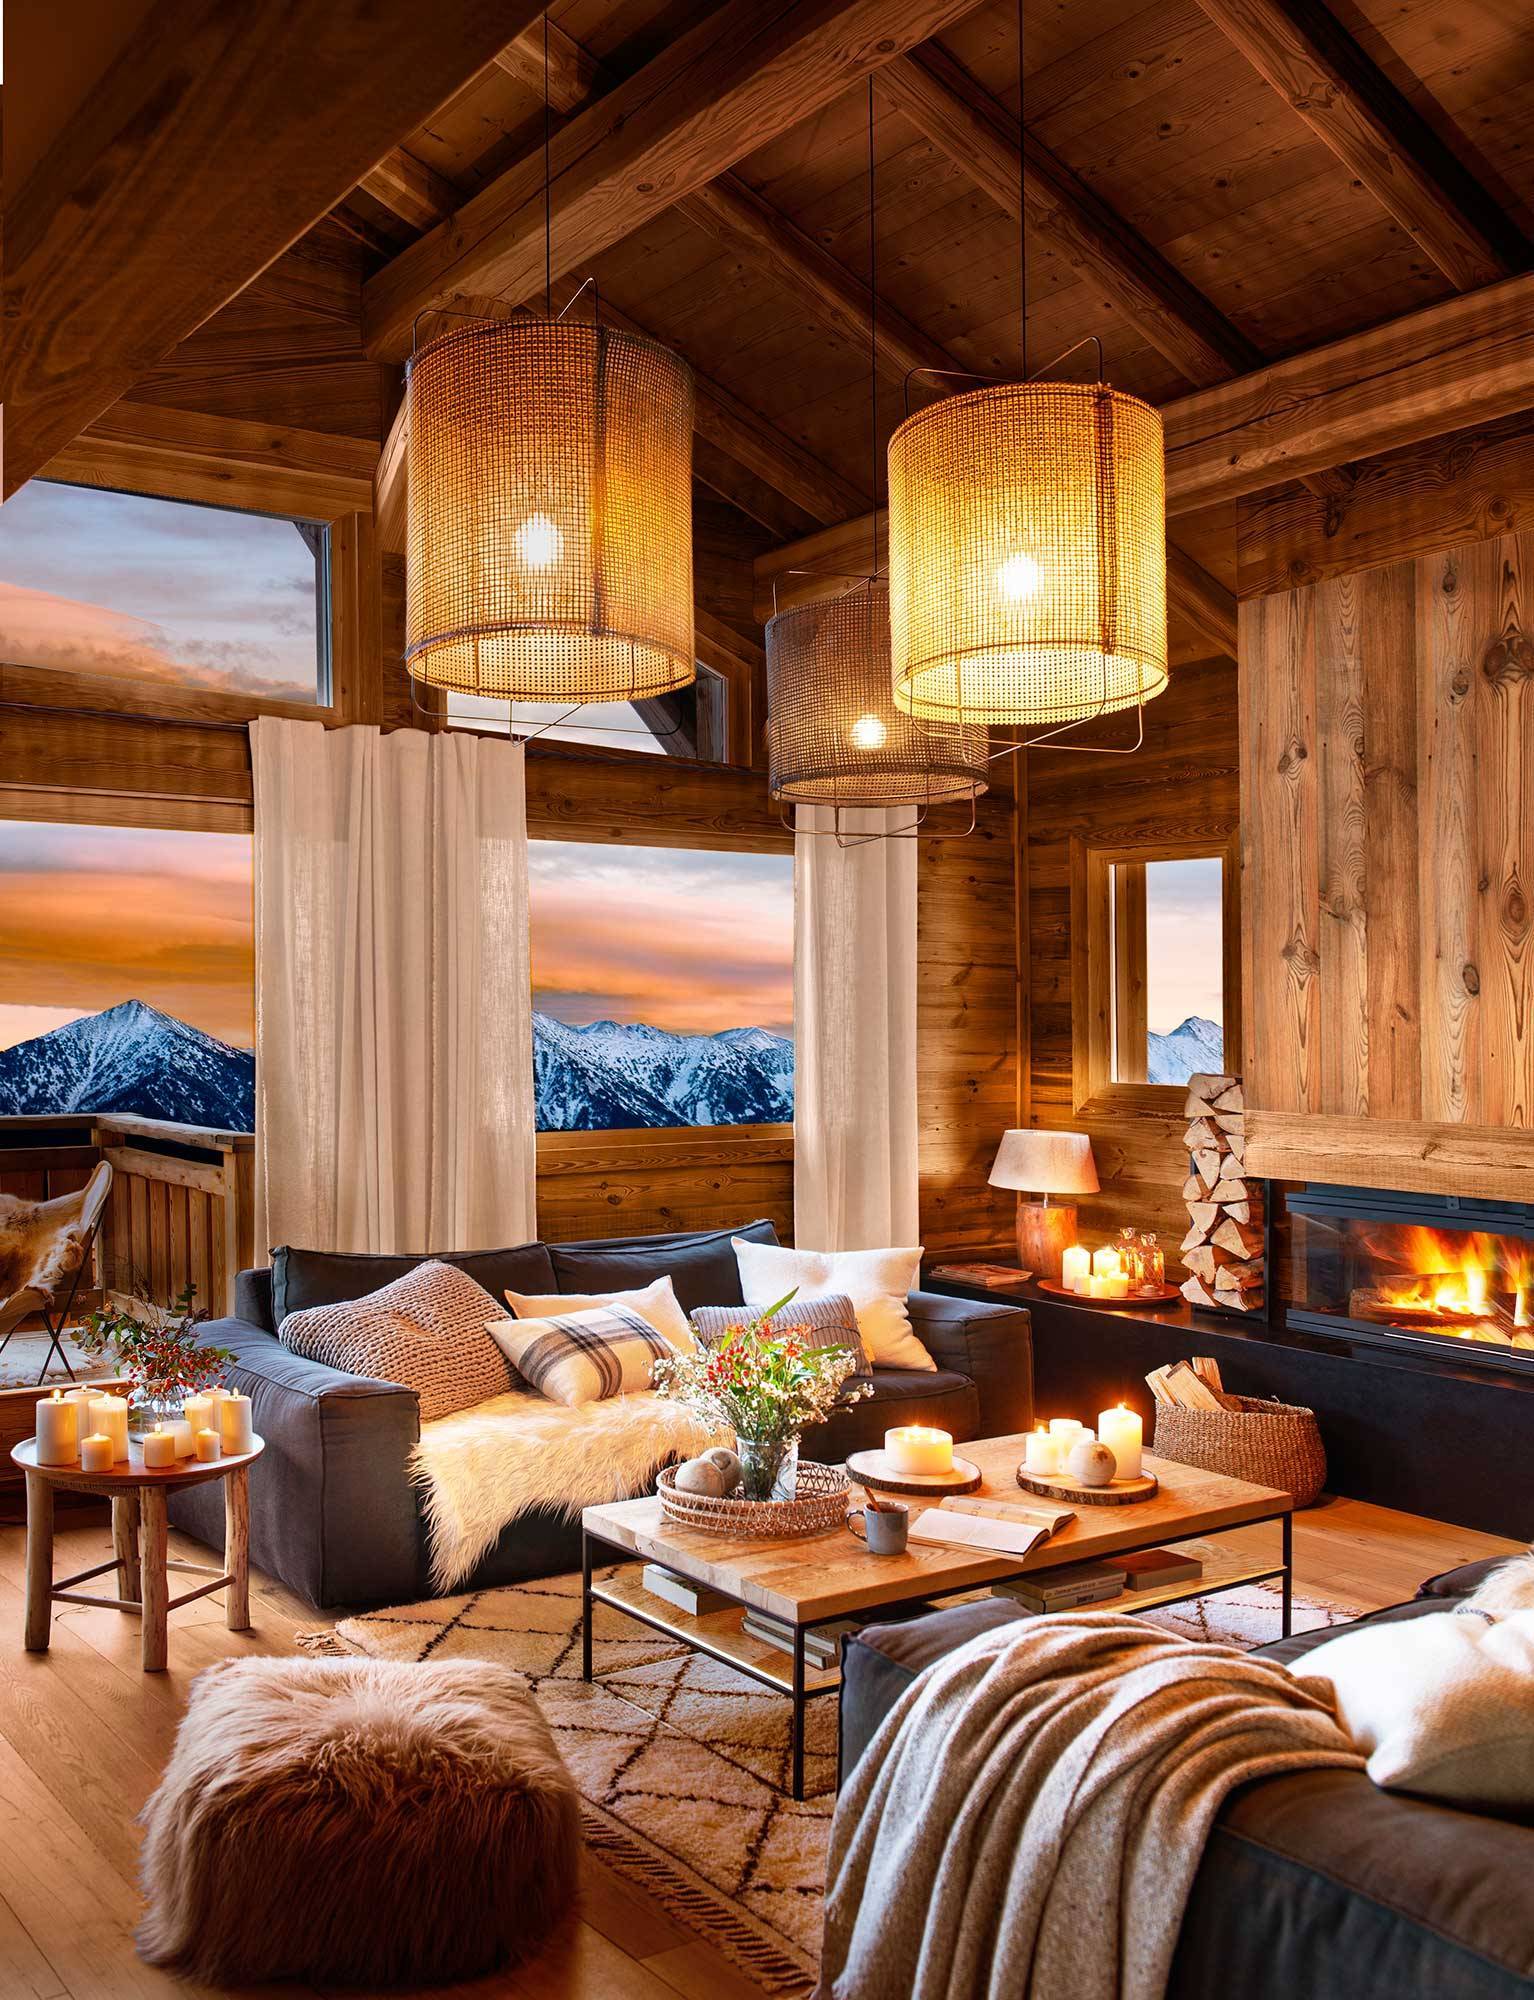 Salón de cabaña de madera revestida de madera y con lámparas de techo iluminadas.